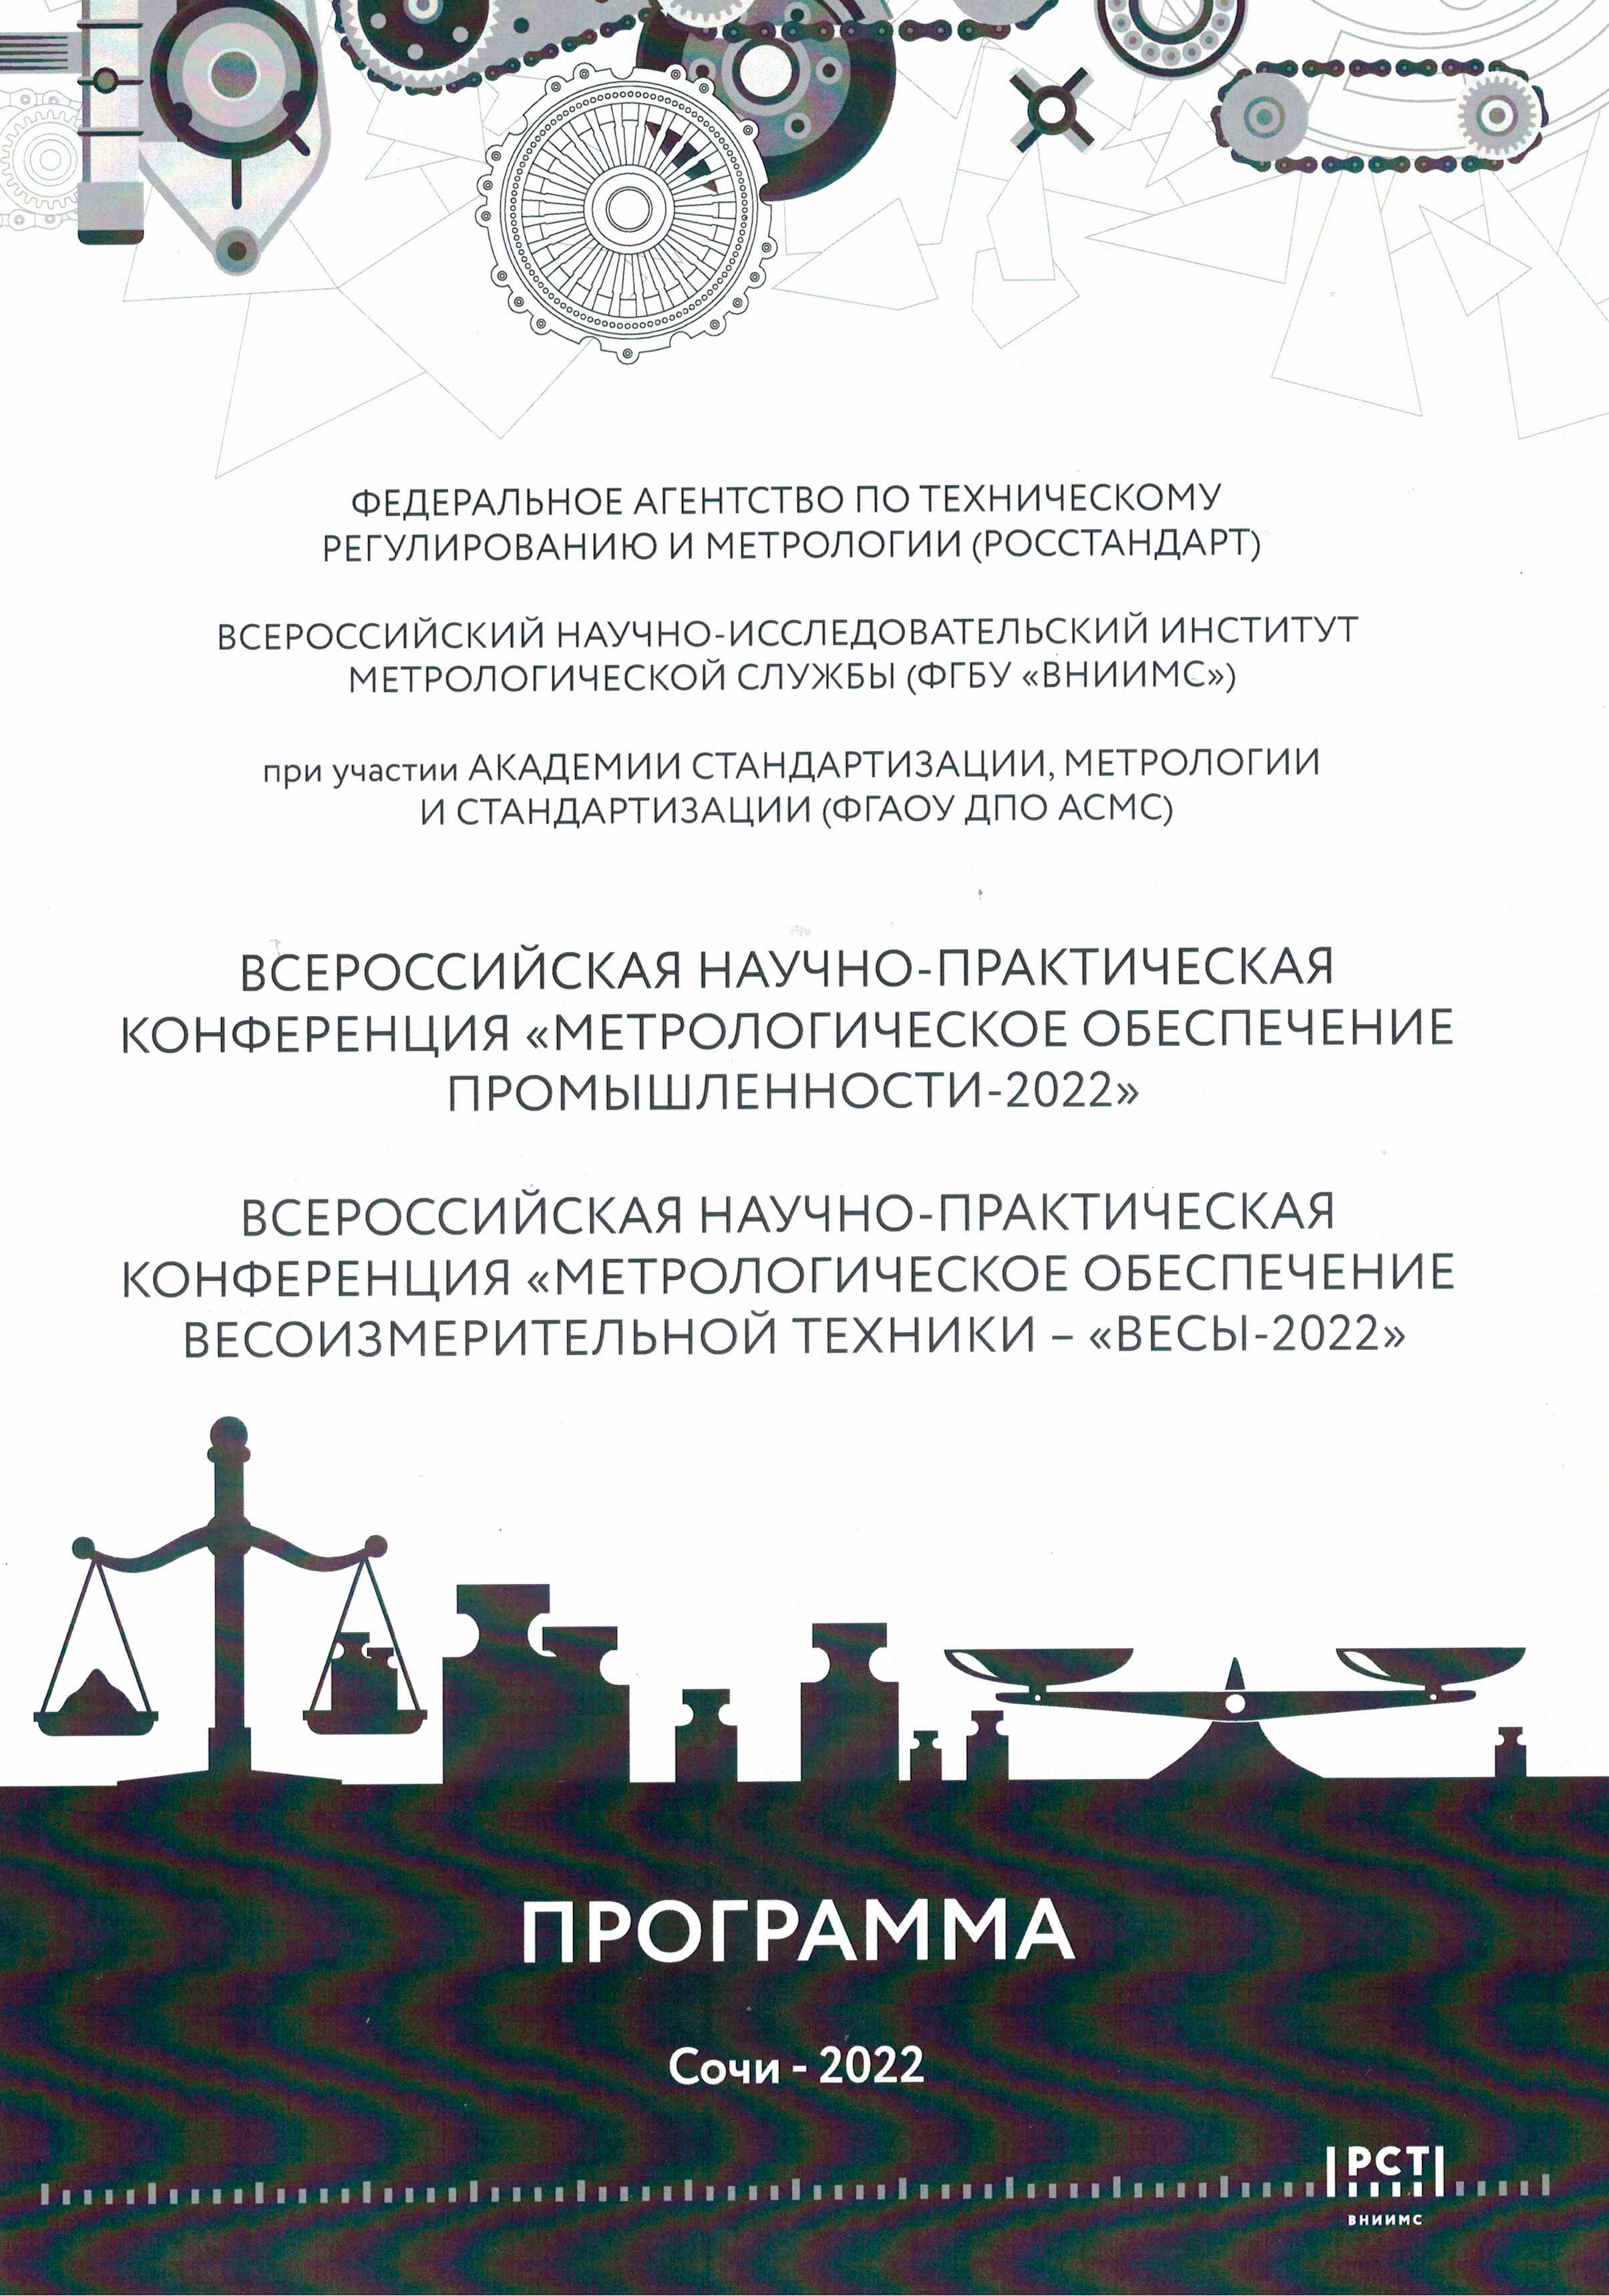 Всероссийская научно-практическая конференция «Метрологическое обеспечение весоизмерительной техники «ВЕСЫ – 2022»  